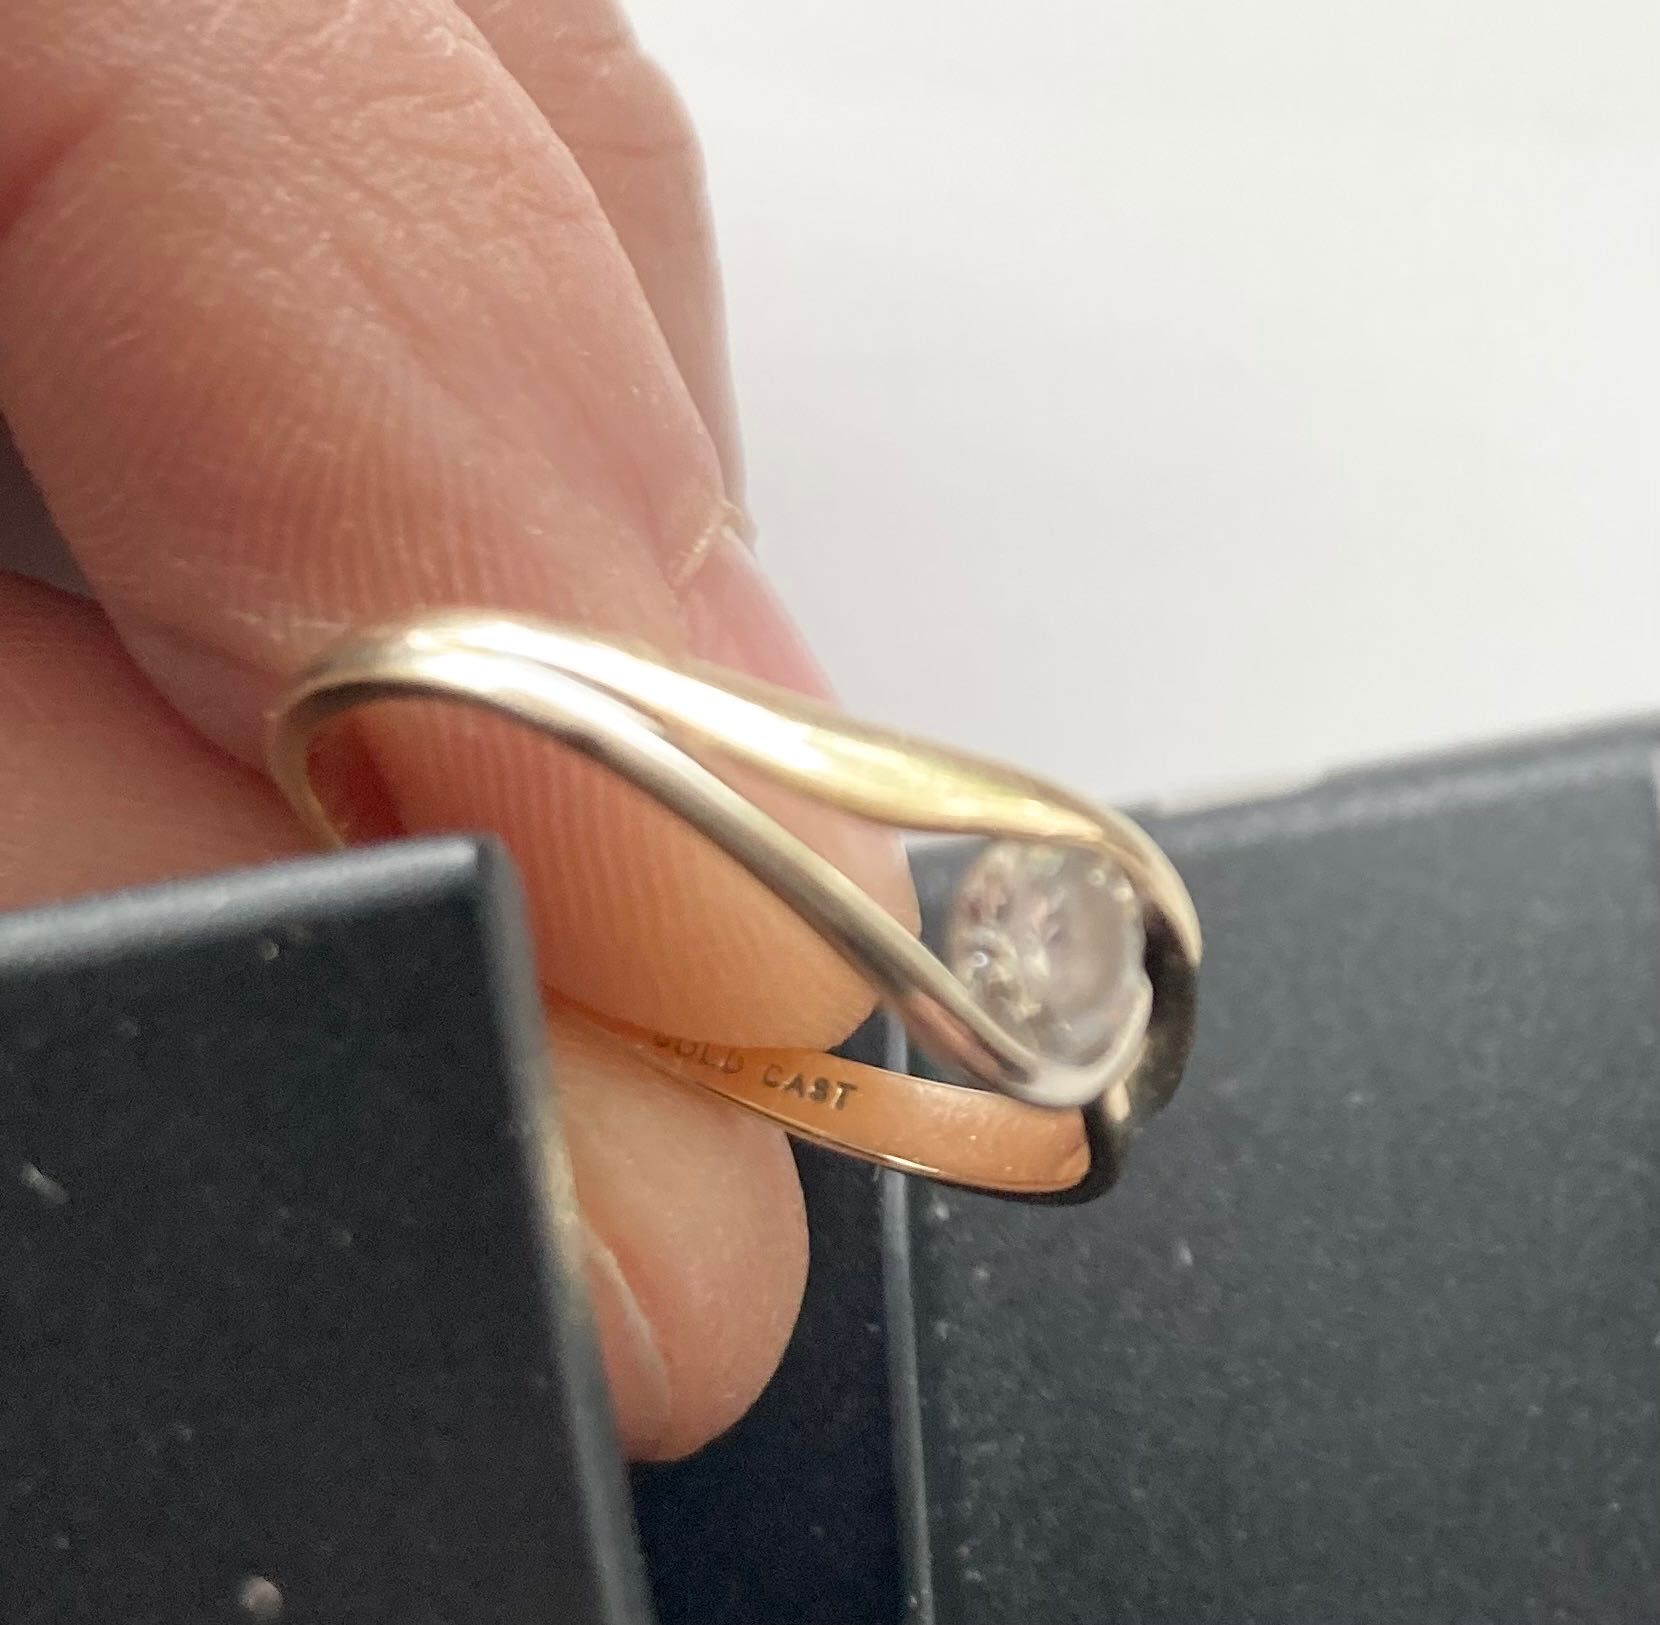 золотое обручальное кольцо 2,1 грамм золото проба 585 Gold Cast